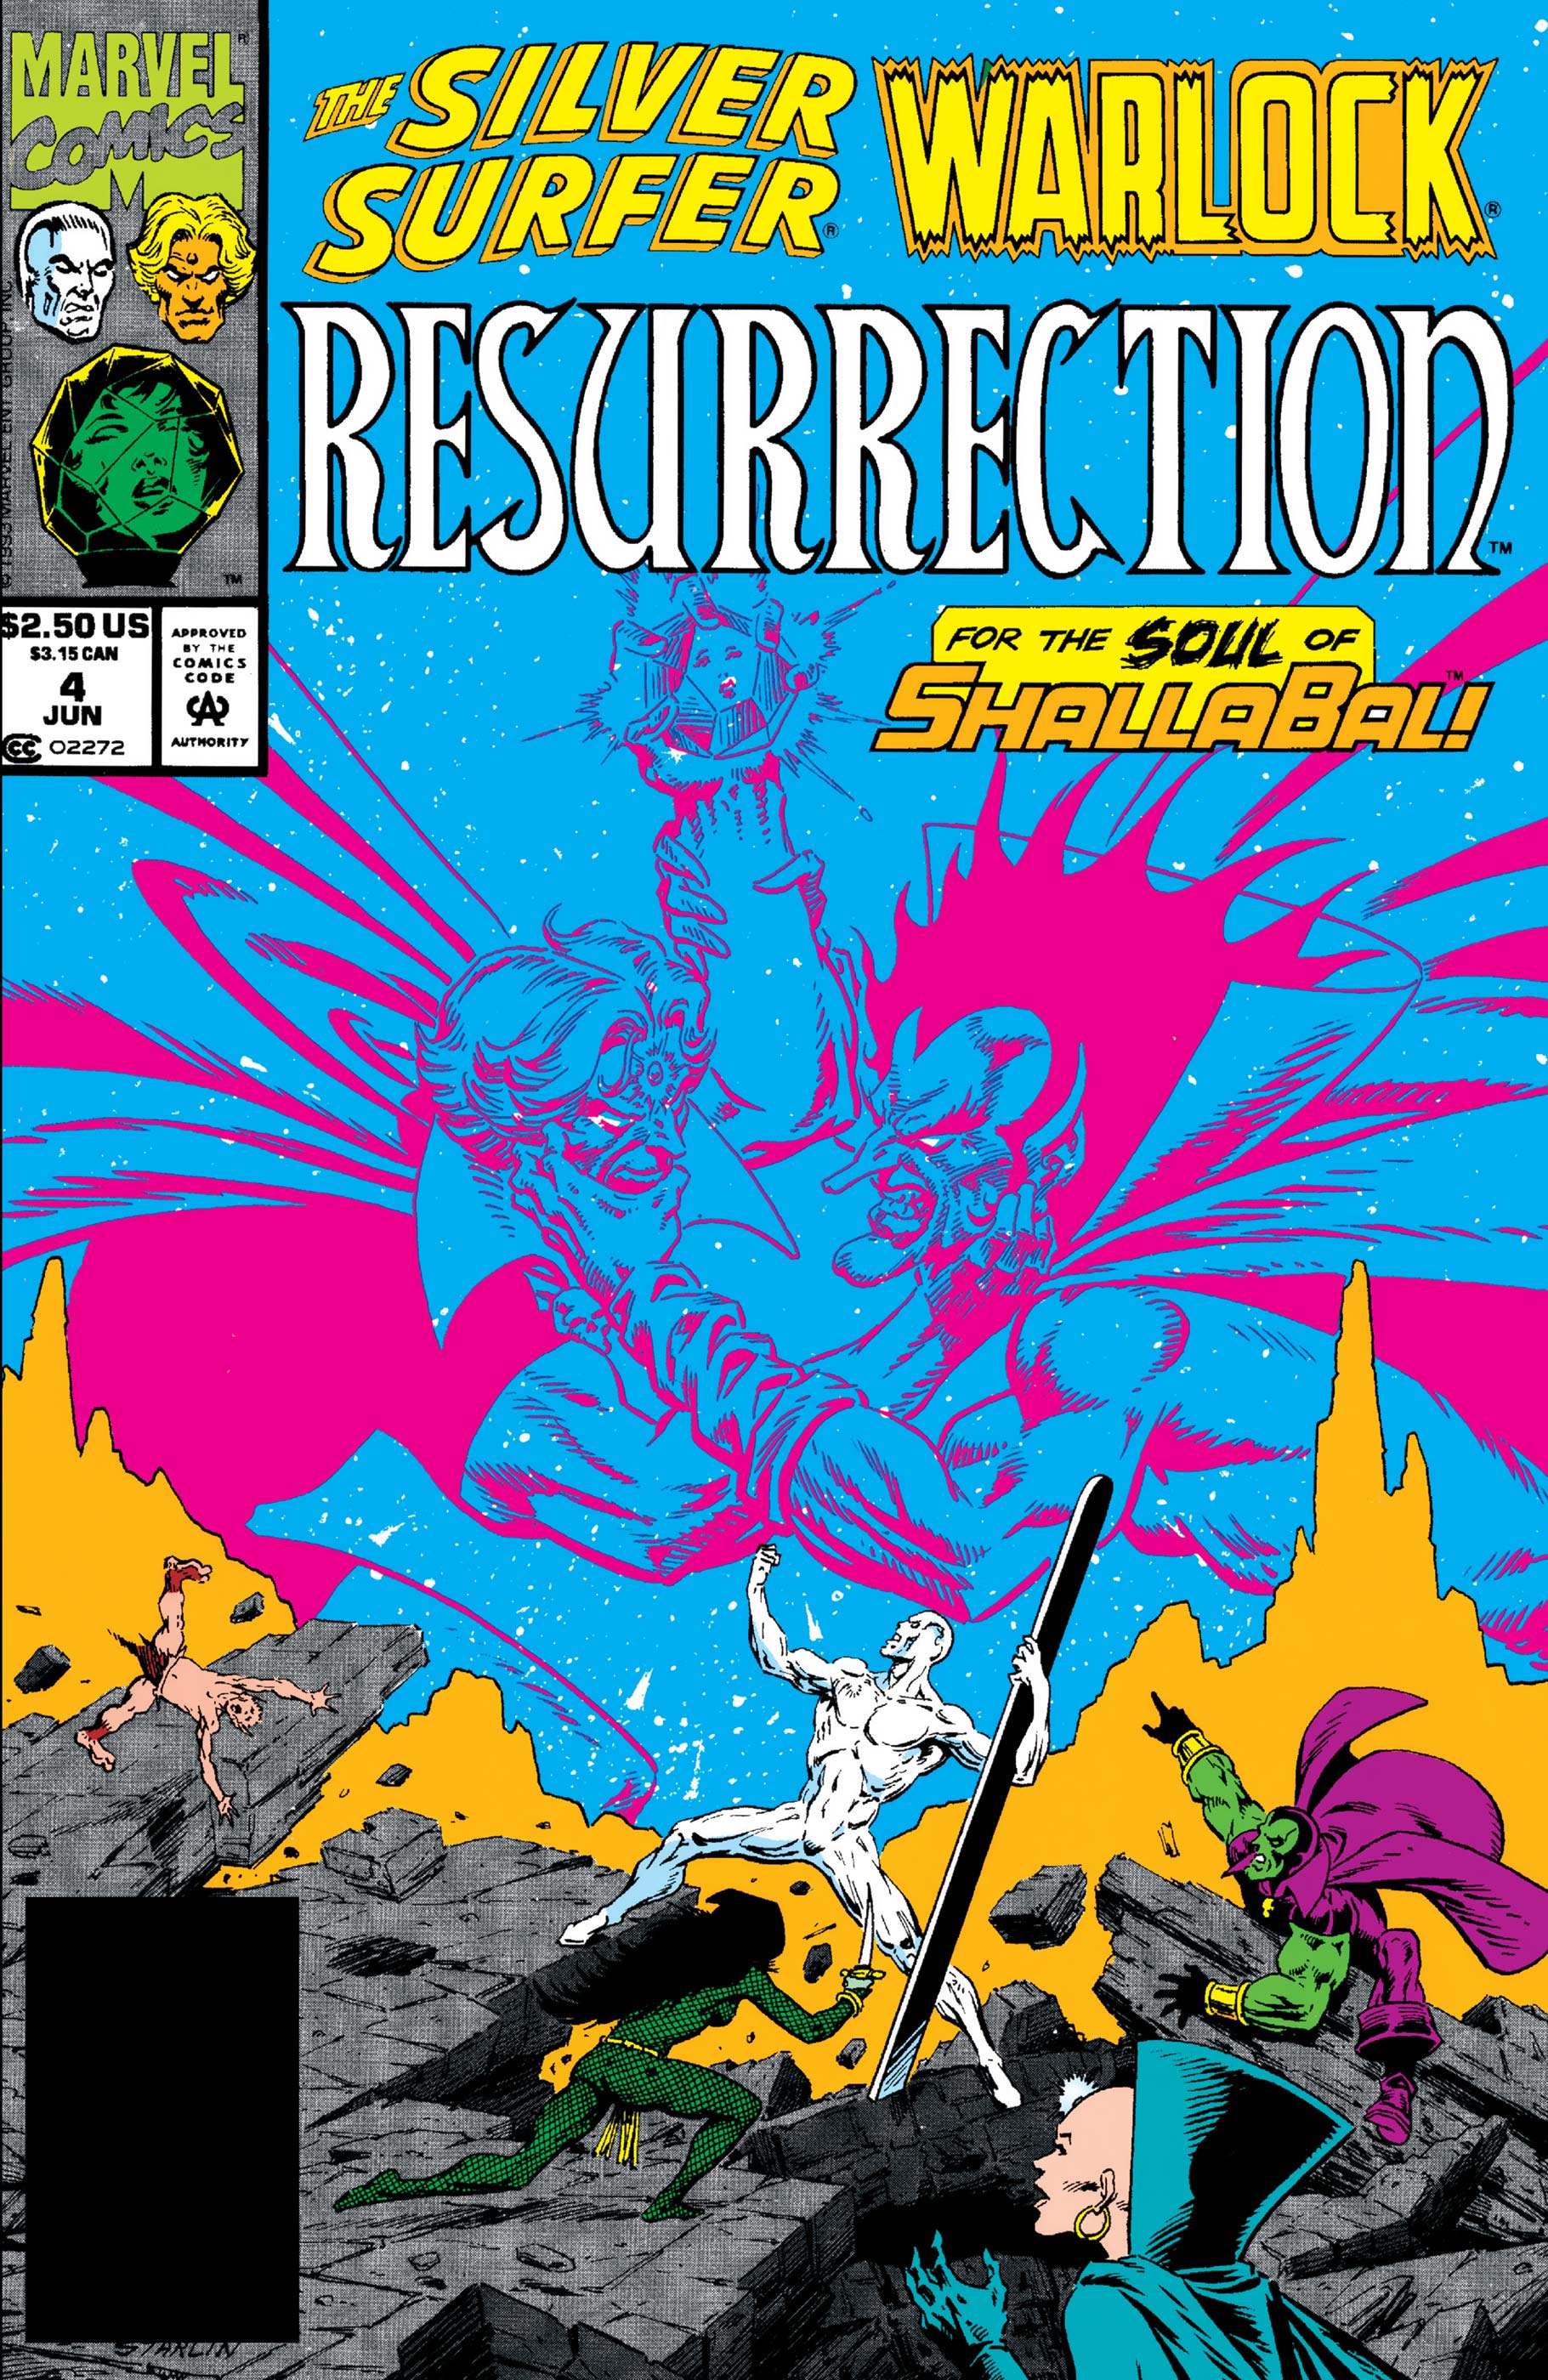 USA, 1993 of 4 Silver Surfer / Warlock: Resurrection # 3 Jim Starlin 